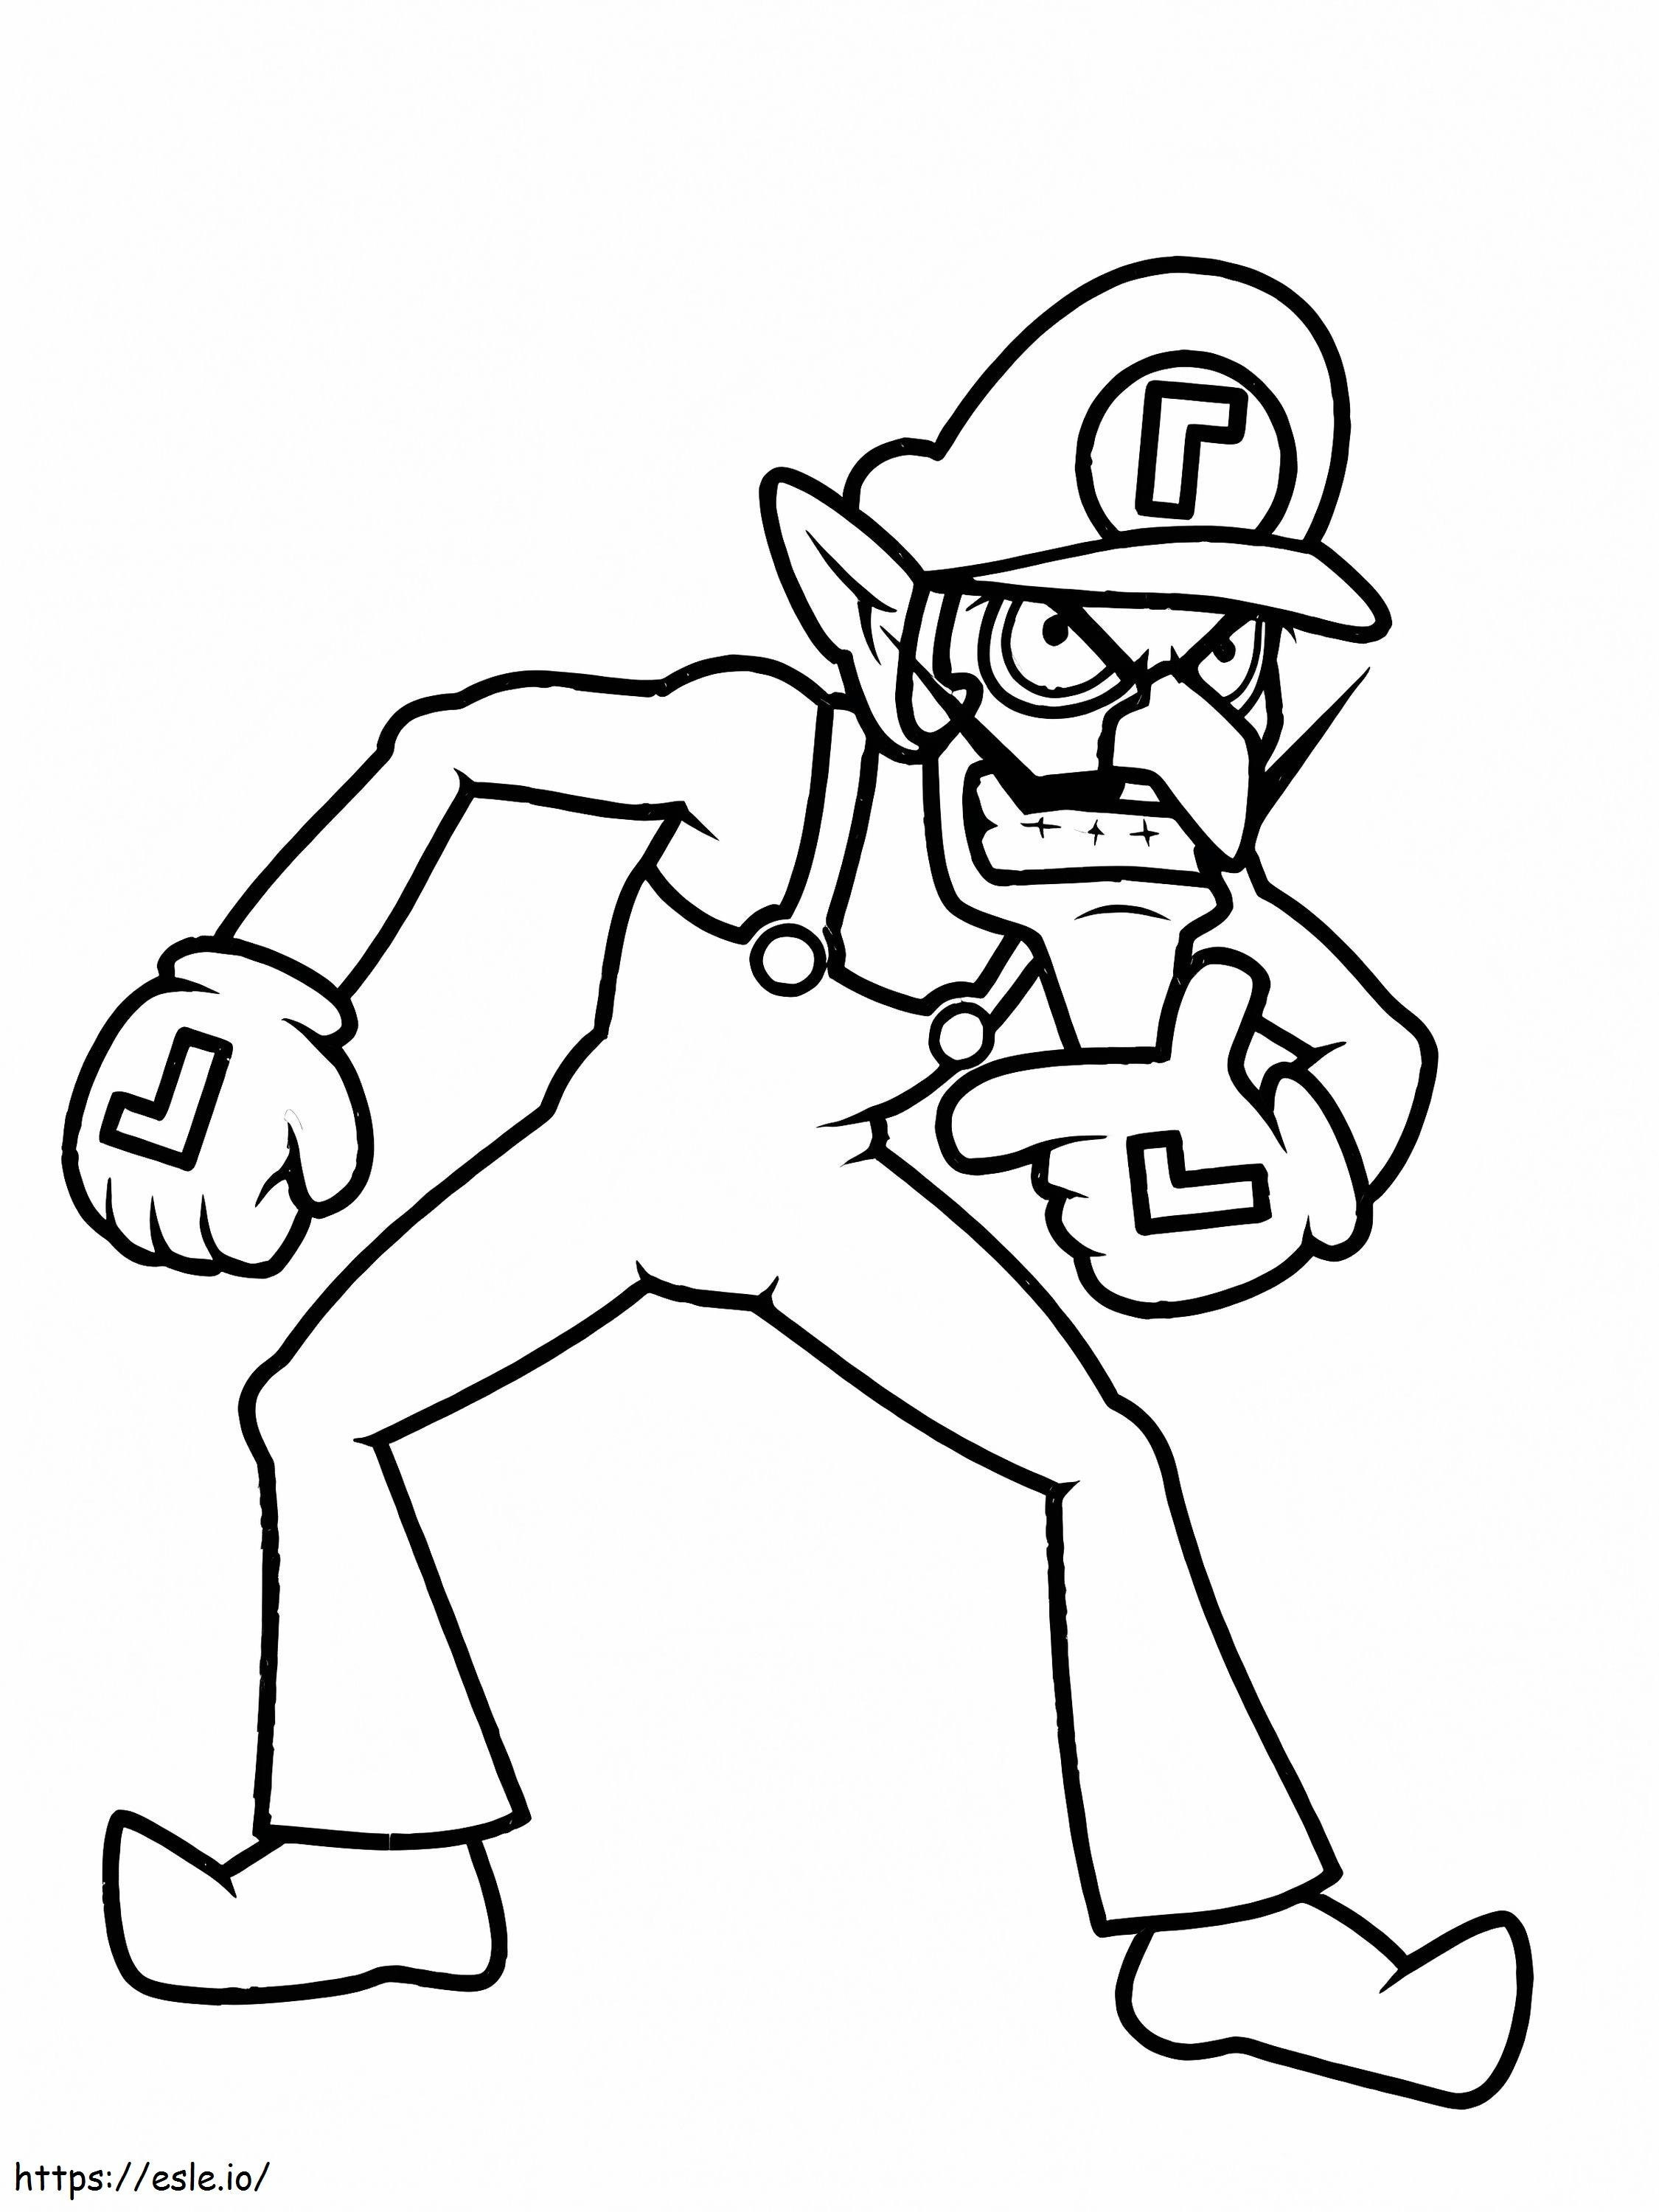 Waluigi From Mario coloring page